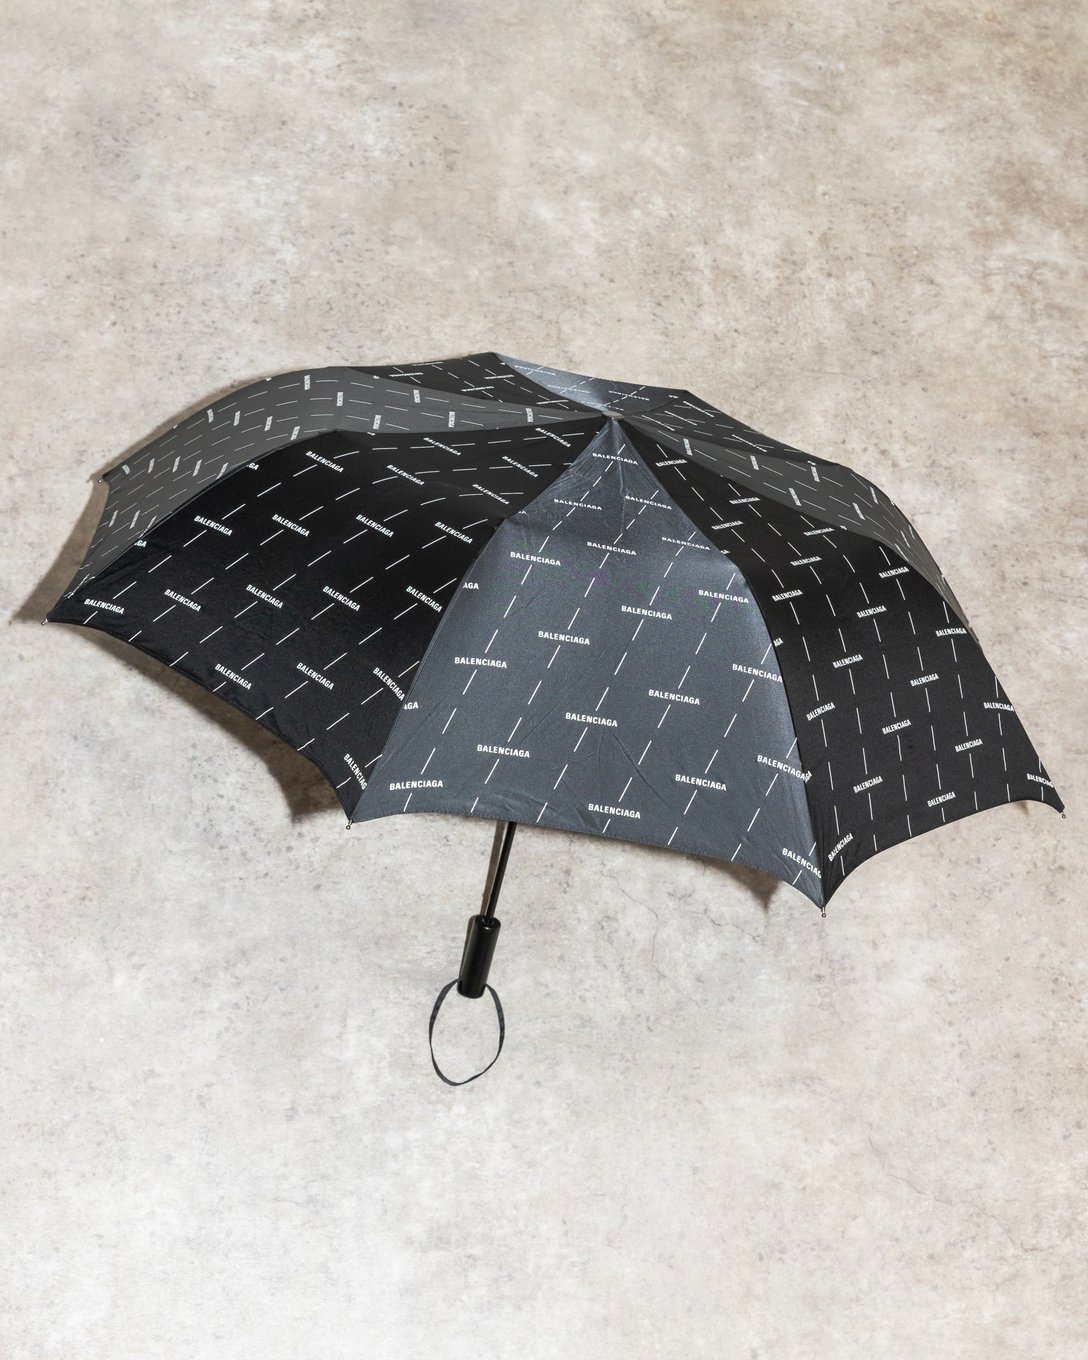 「バレンシアガ」の折り畳み傘 Image by FASHIONSNAP